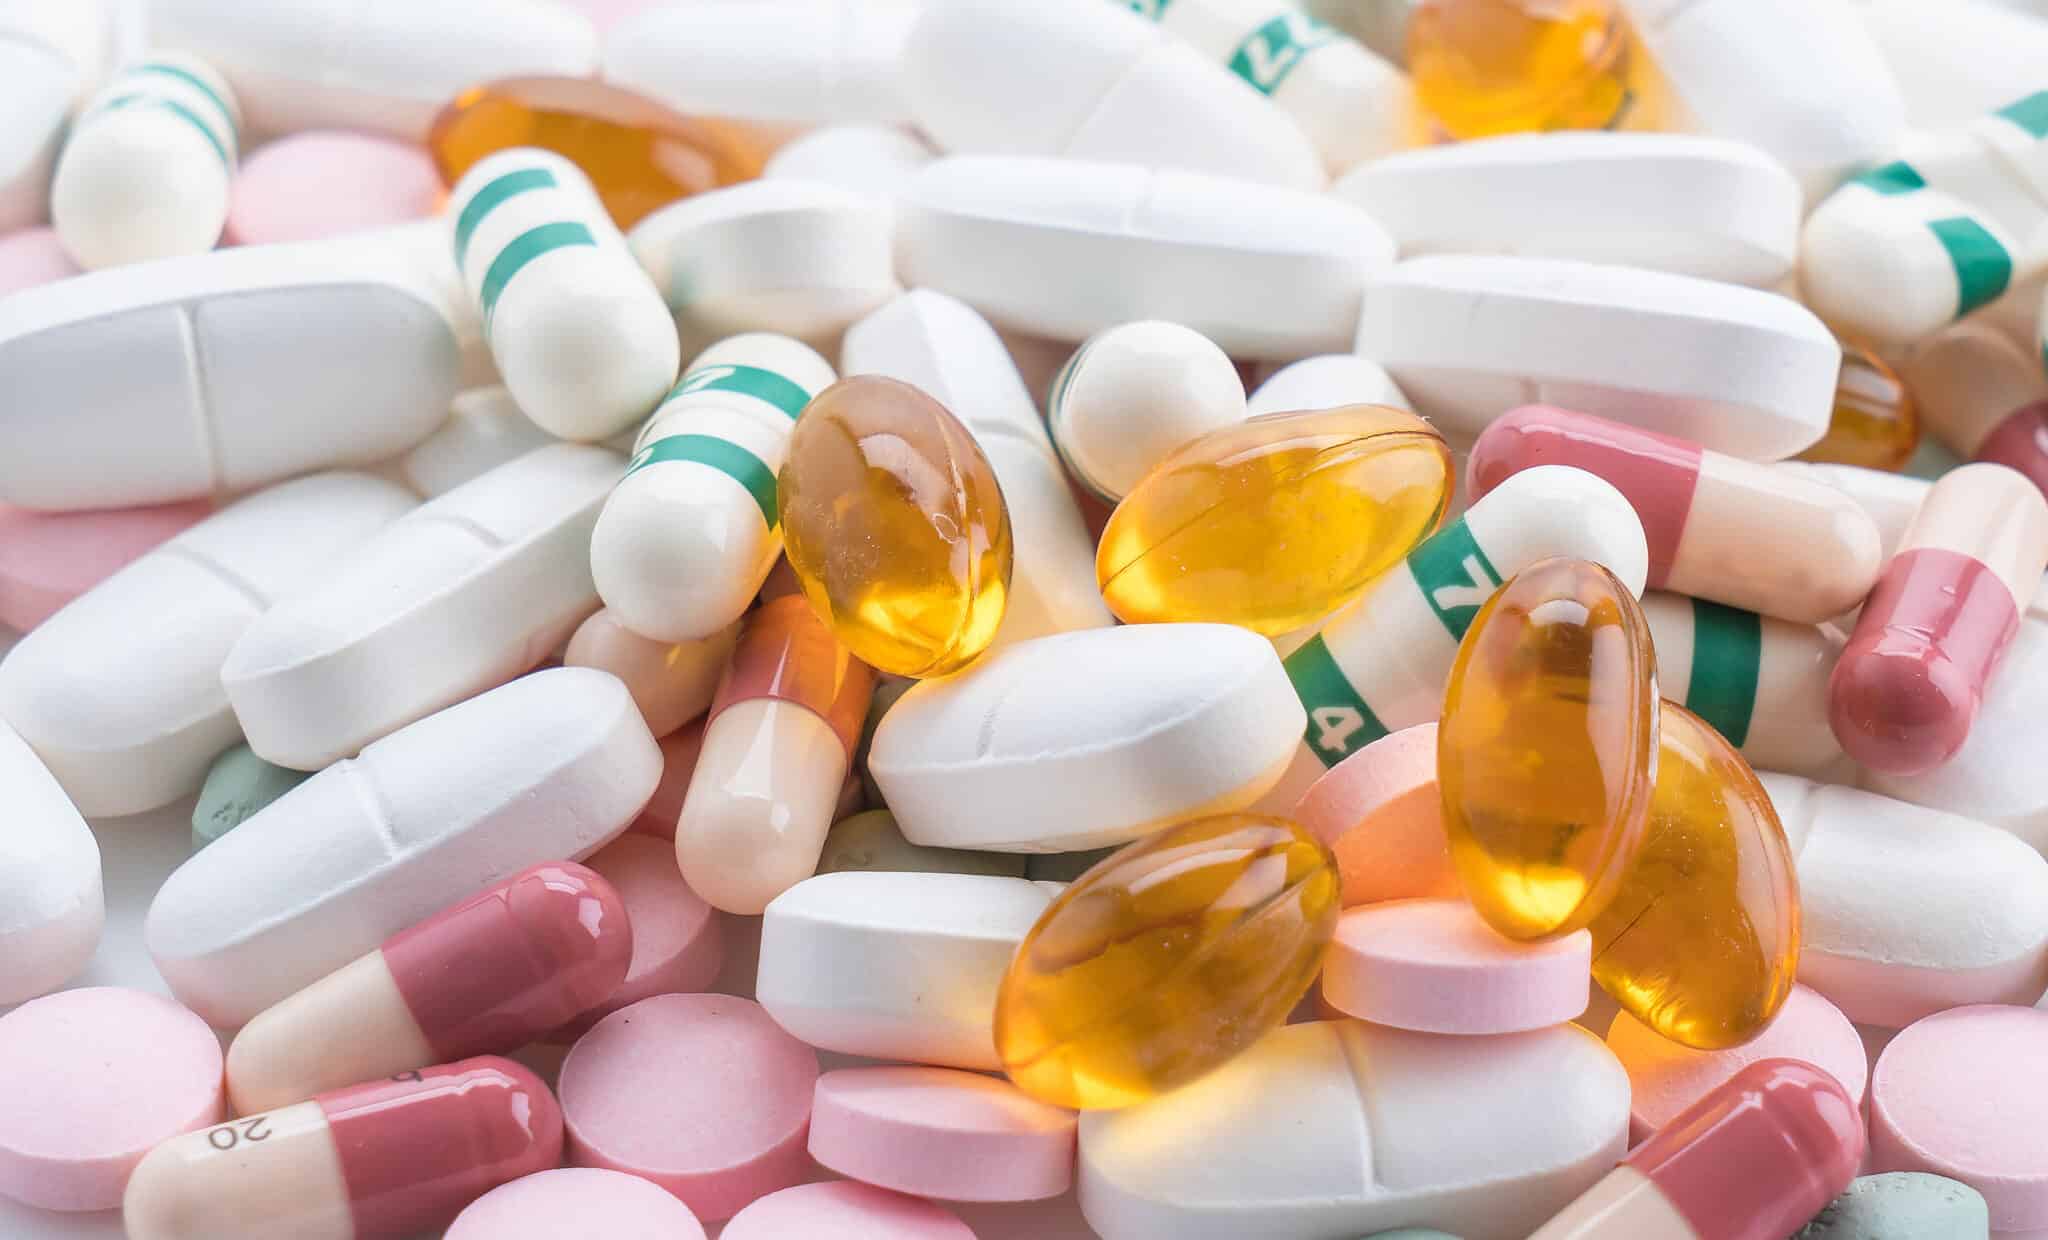 В Симферополе продавали «чудо-лекарства» за 1,5 млн рублей, которые не лечат